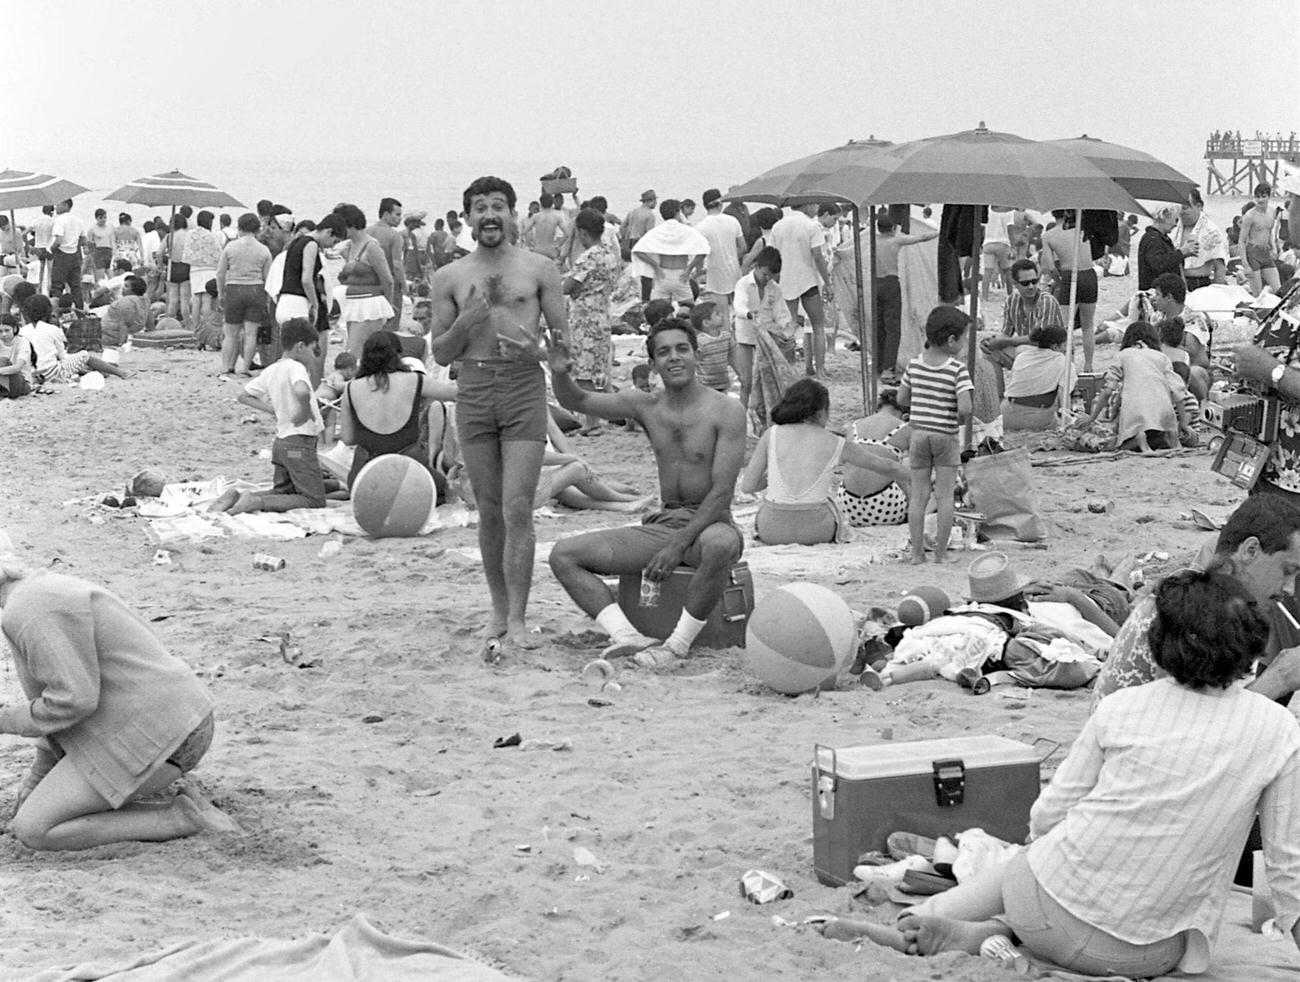 Men Posing For A Photo On A Crowded Coney Island Beach, Brooklyn, 1968.